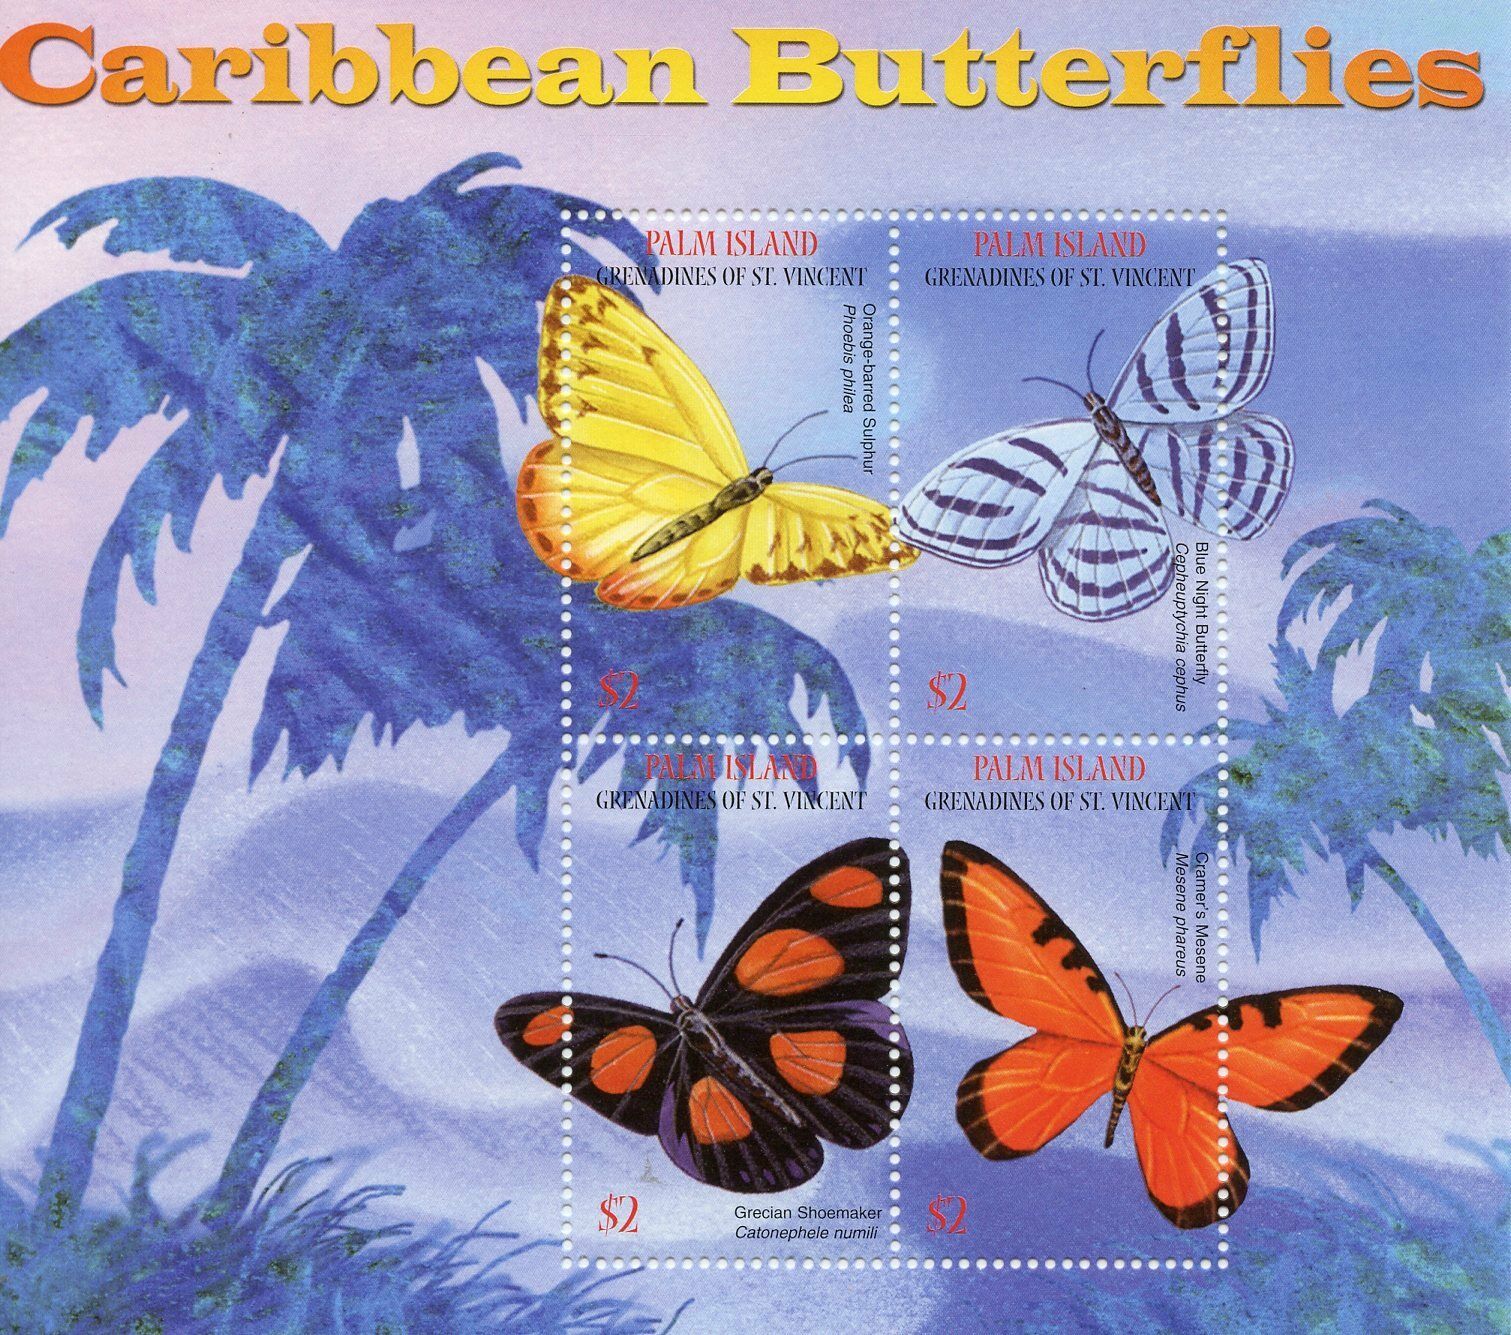 Palm Island Gren St Vincent 2003 MNH Butterflies Stamps Caribbean Butterflies 4v M/S